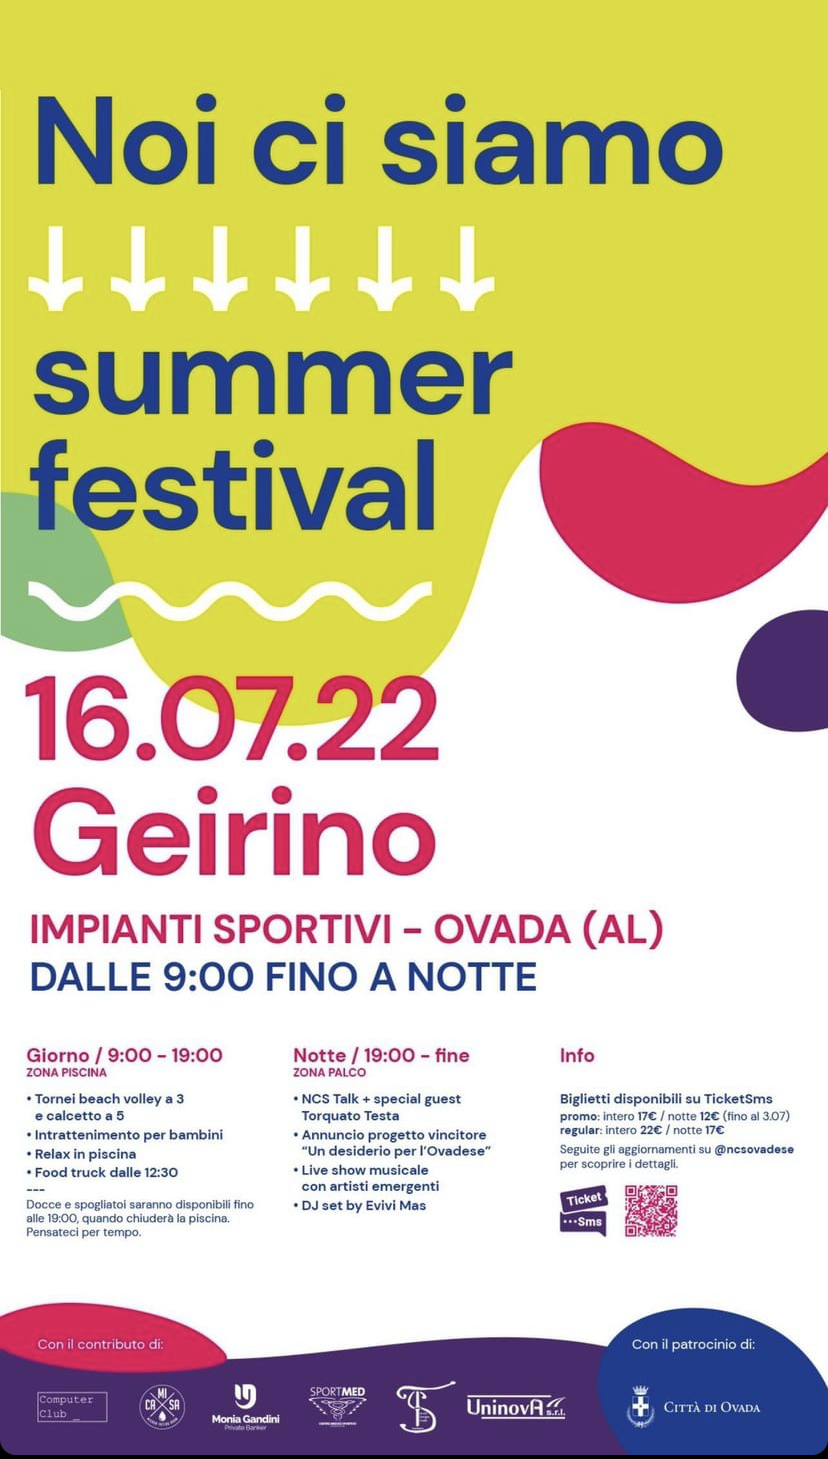 Sabato 16 luglio a Ovada una giornata di divertimento con “Noi ci siamo – summer festival”